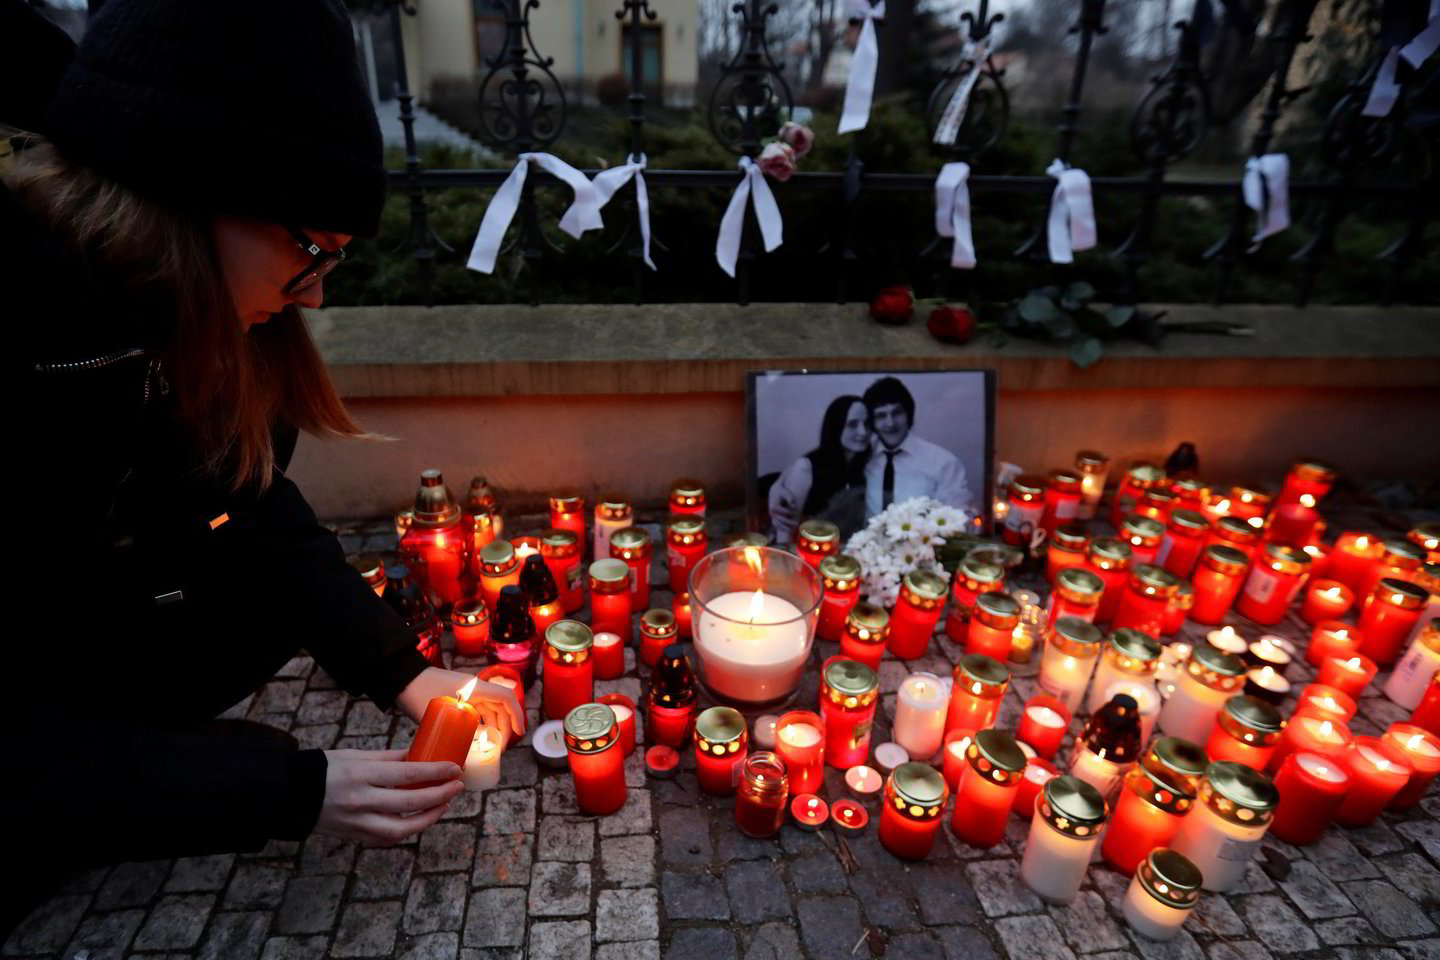 Po žurnalisto, tyrusio ryšius tarp Bratislavos vyriausybės ir mafijos, nužudymo Slovakijoje kilo protestai, žmonės reikalavo politikų atsistatydinimo.<br>Reuters/Scanpix nuotr.